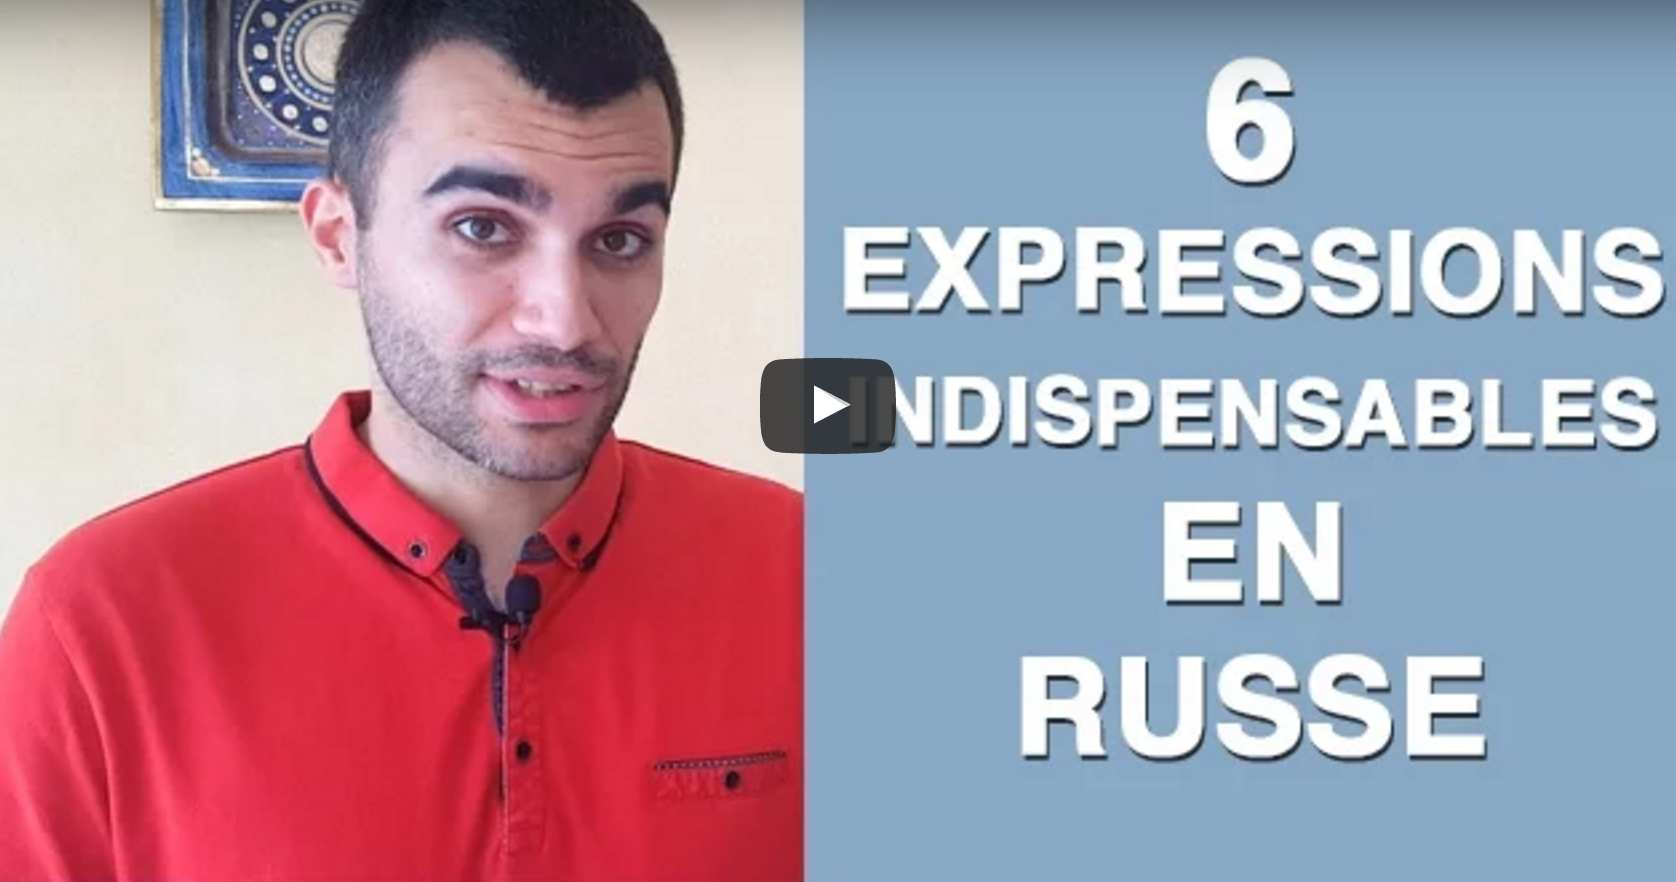 6 expressions indispensables en russe (partie 1)